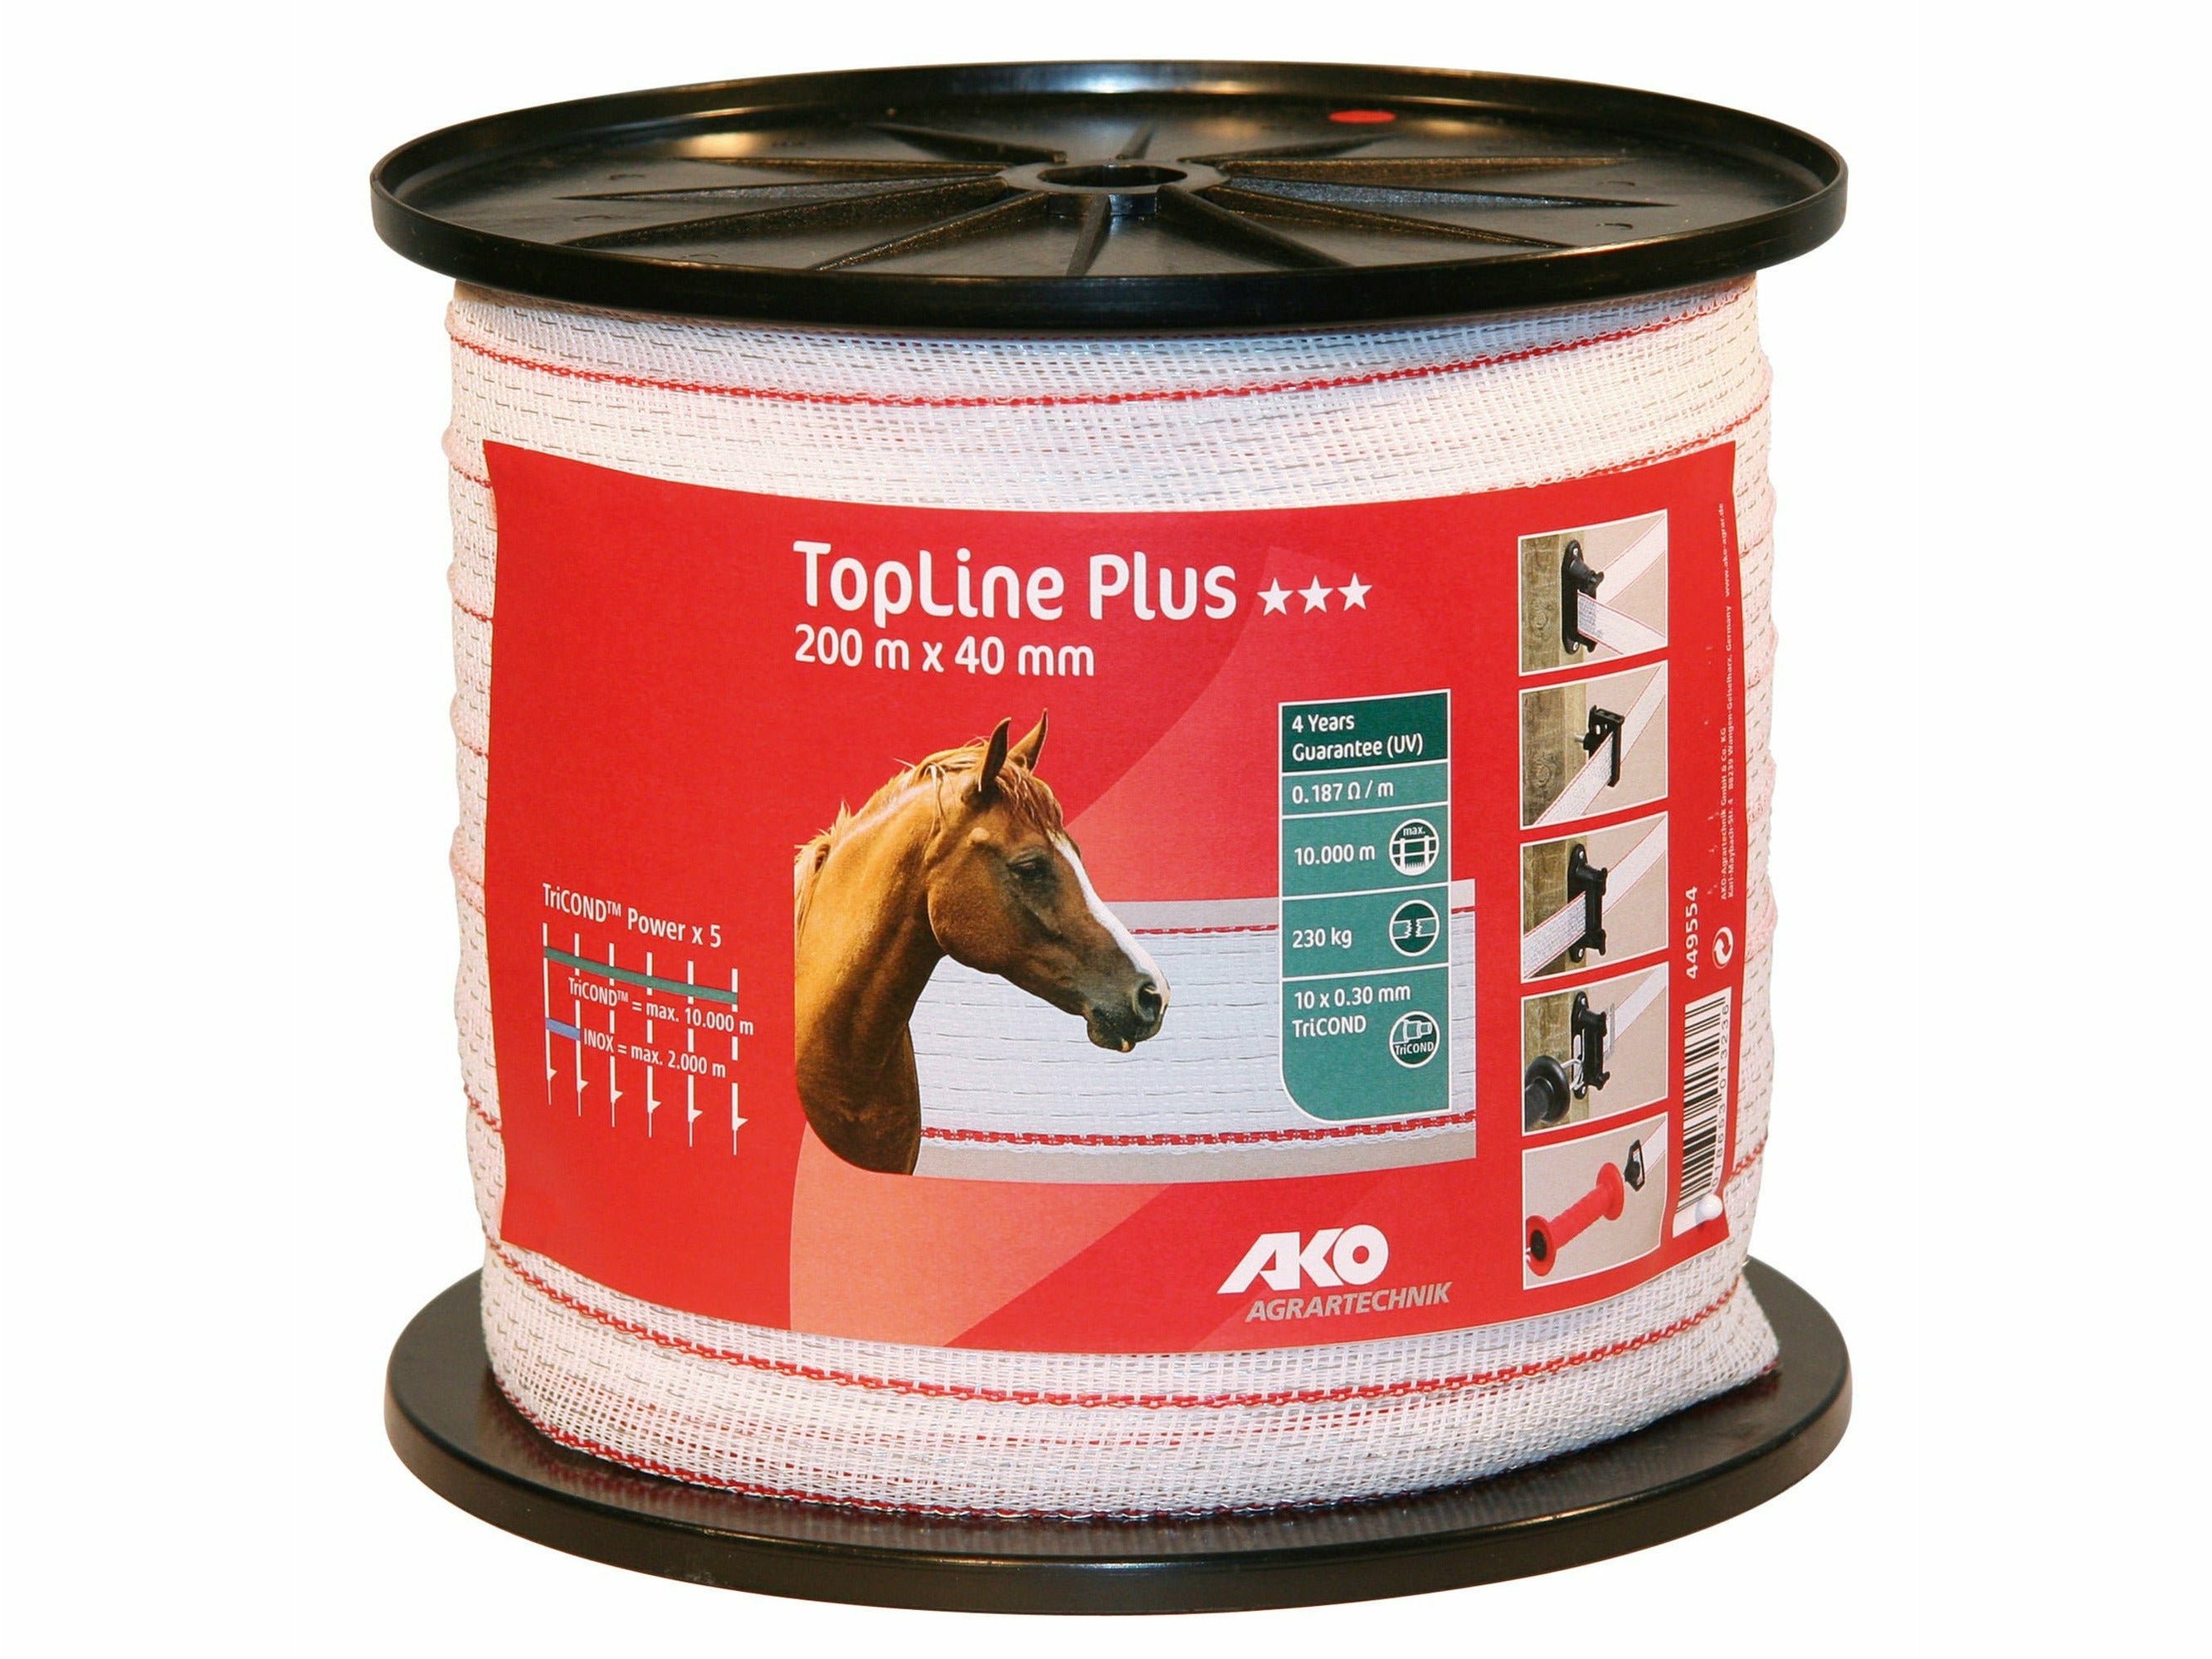 Das TopLine Plus Band von AKO garantiert eine hervorragende Leitfähigkeit sowie eine sehr lange Haltbarkeit bei mittleren bis langen Zaunanlagen - bestens geeignet für Deine Pferdeweide oder Deinen Offenstall